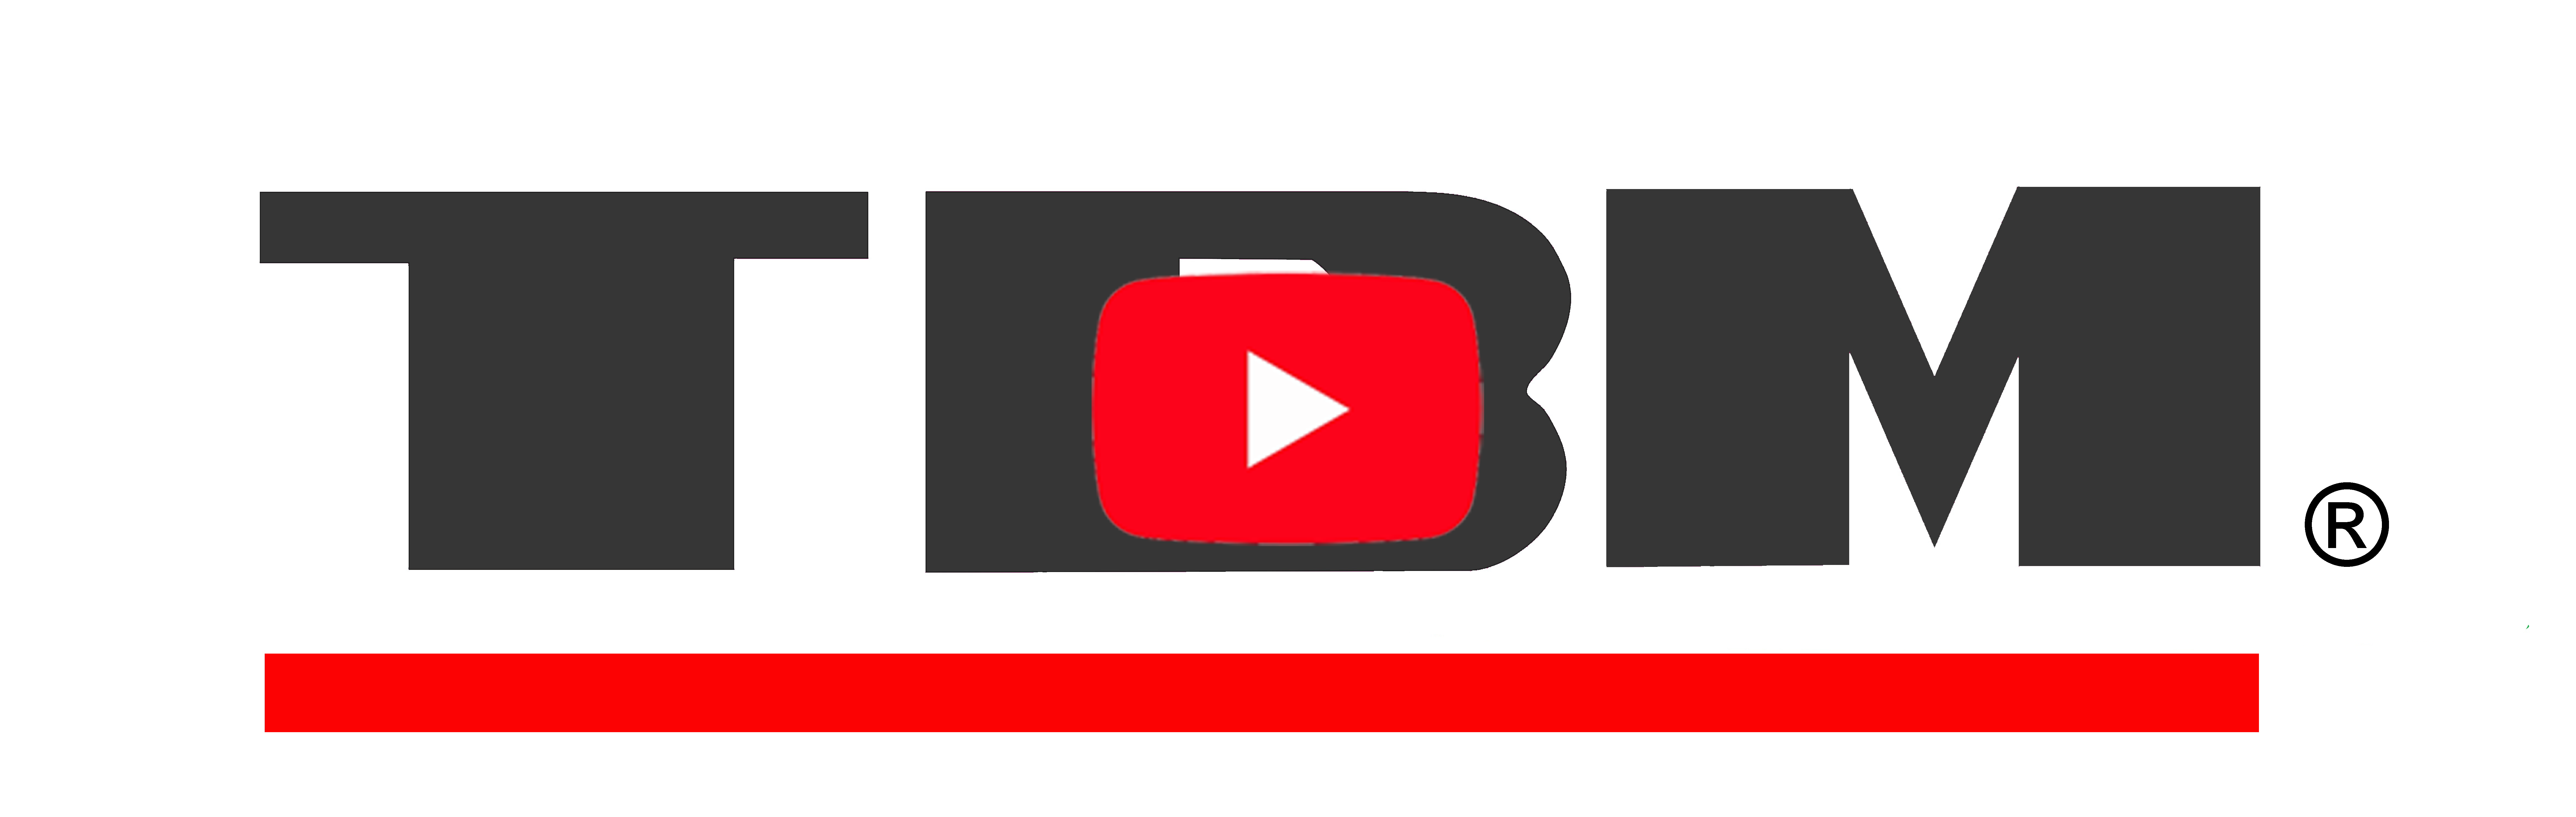 ツバメ無線株式会社の紹介動画です。YouTubeのページへ進む。